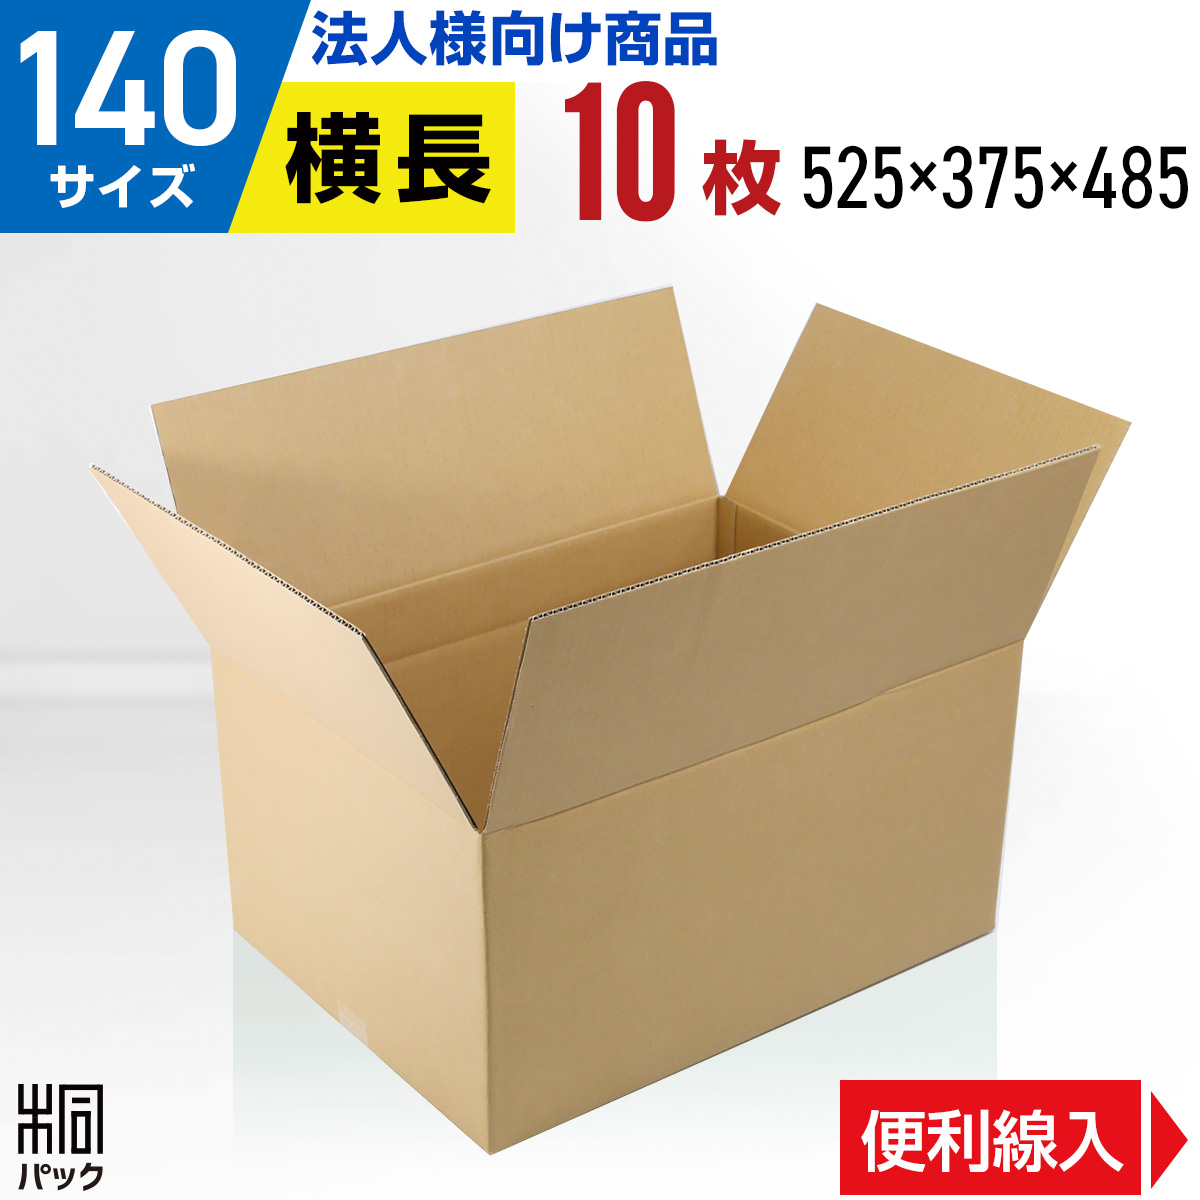 【楽天市場】【法人特価】段ボール 箱 140サイズ 便利線入り 20枚 